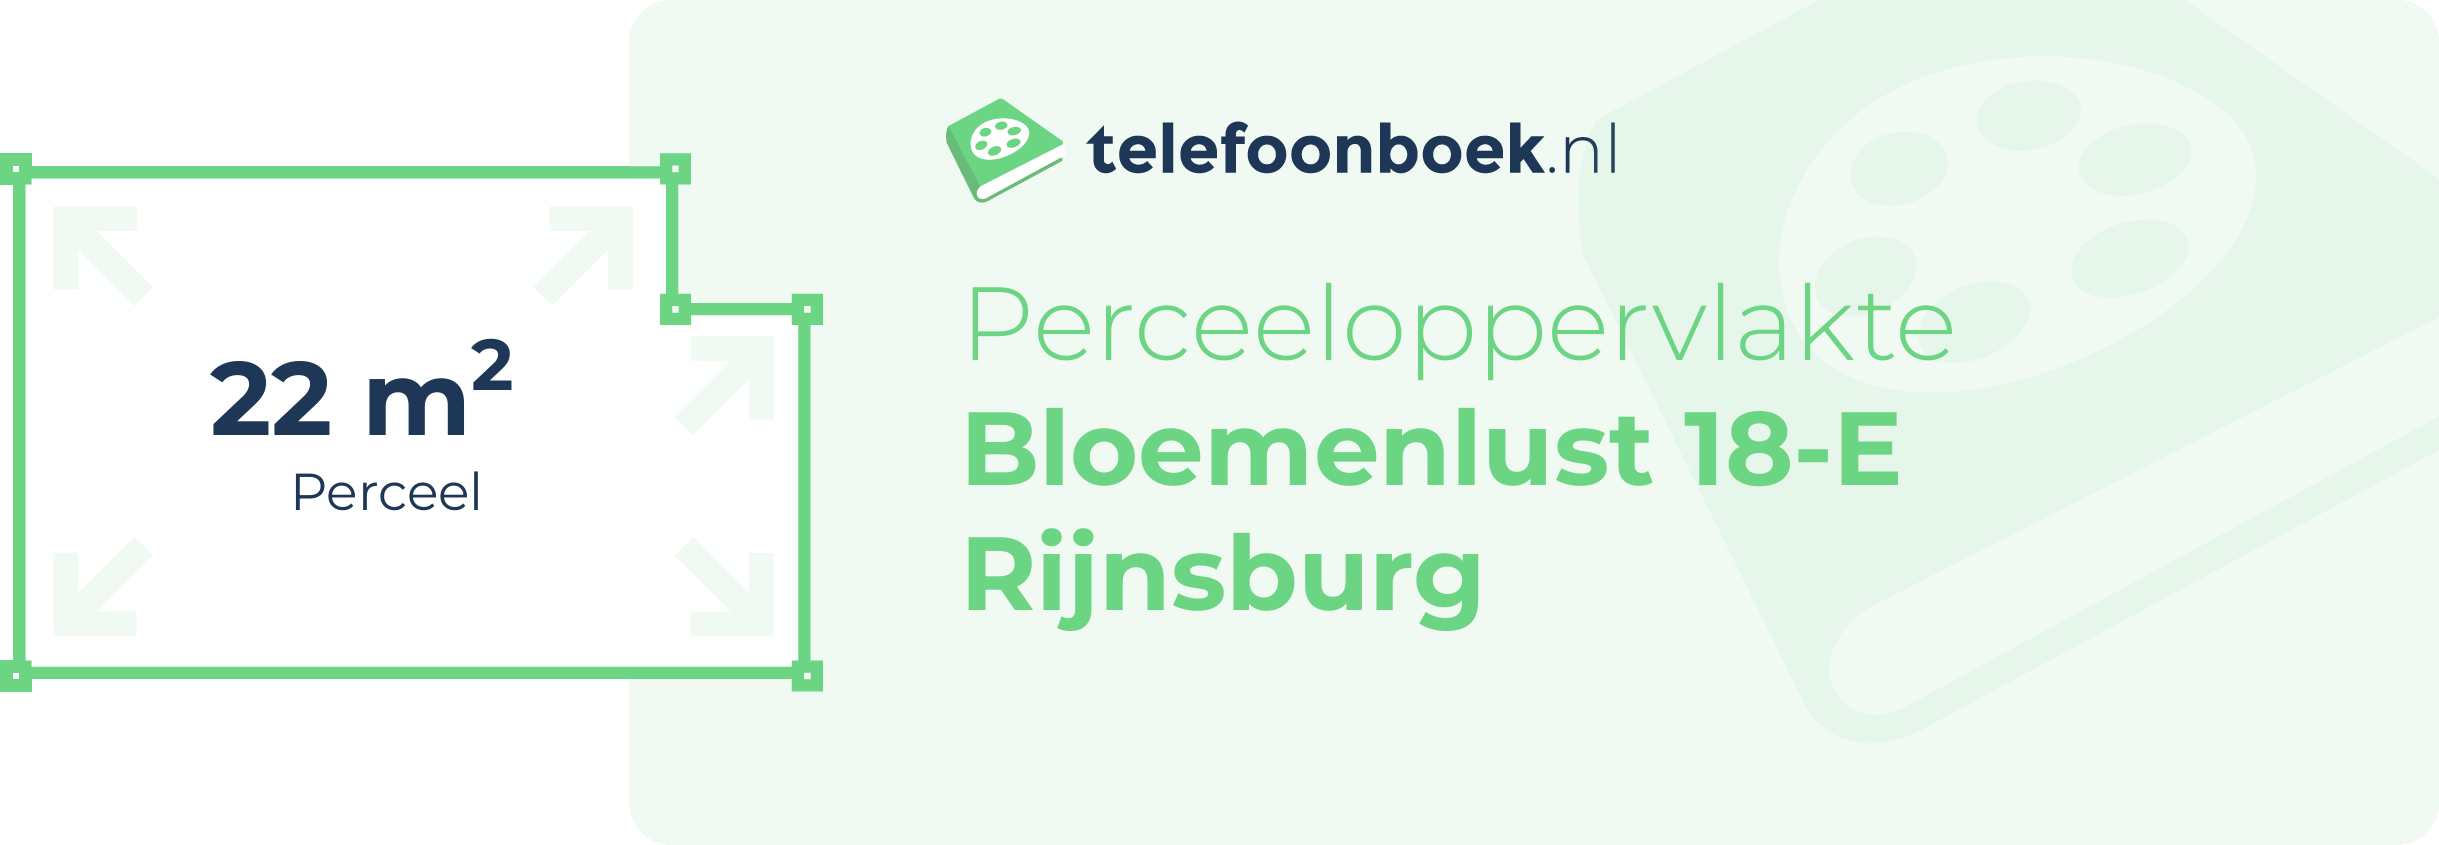 Perceeloppervlakte Bloemenlust 18-E Rijnsburg